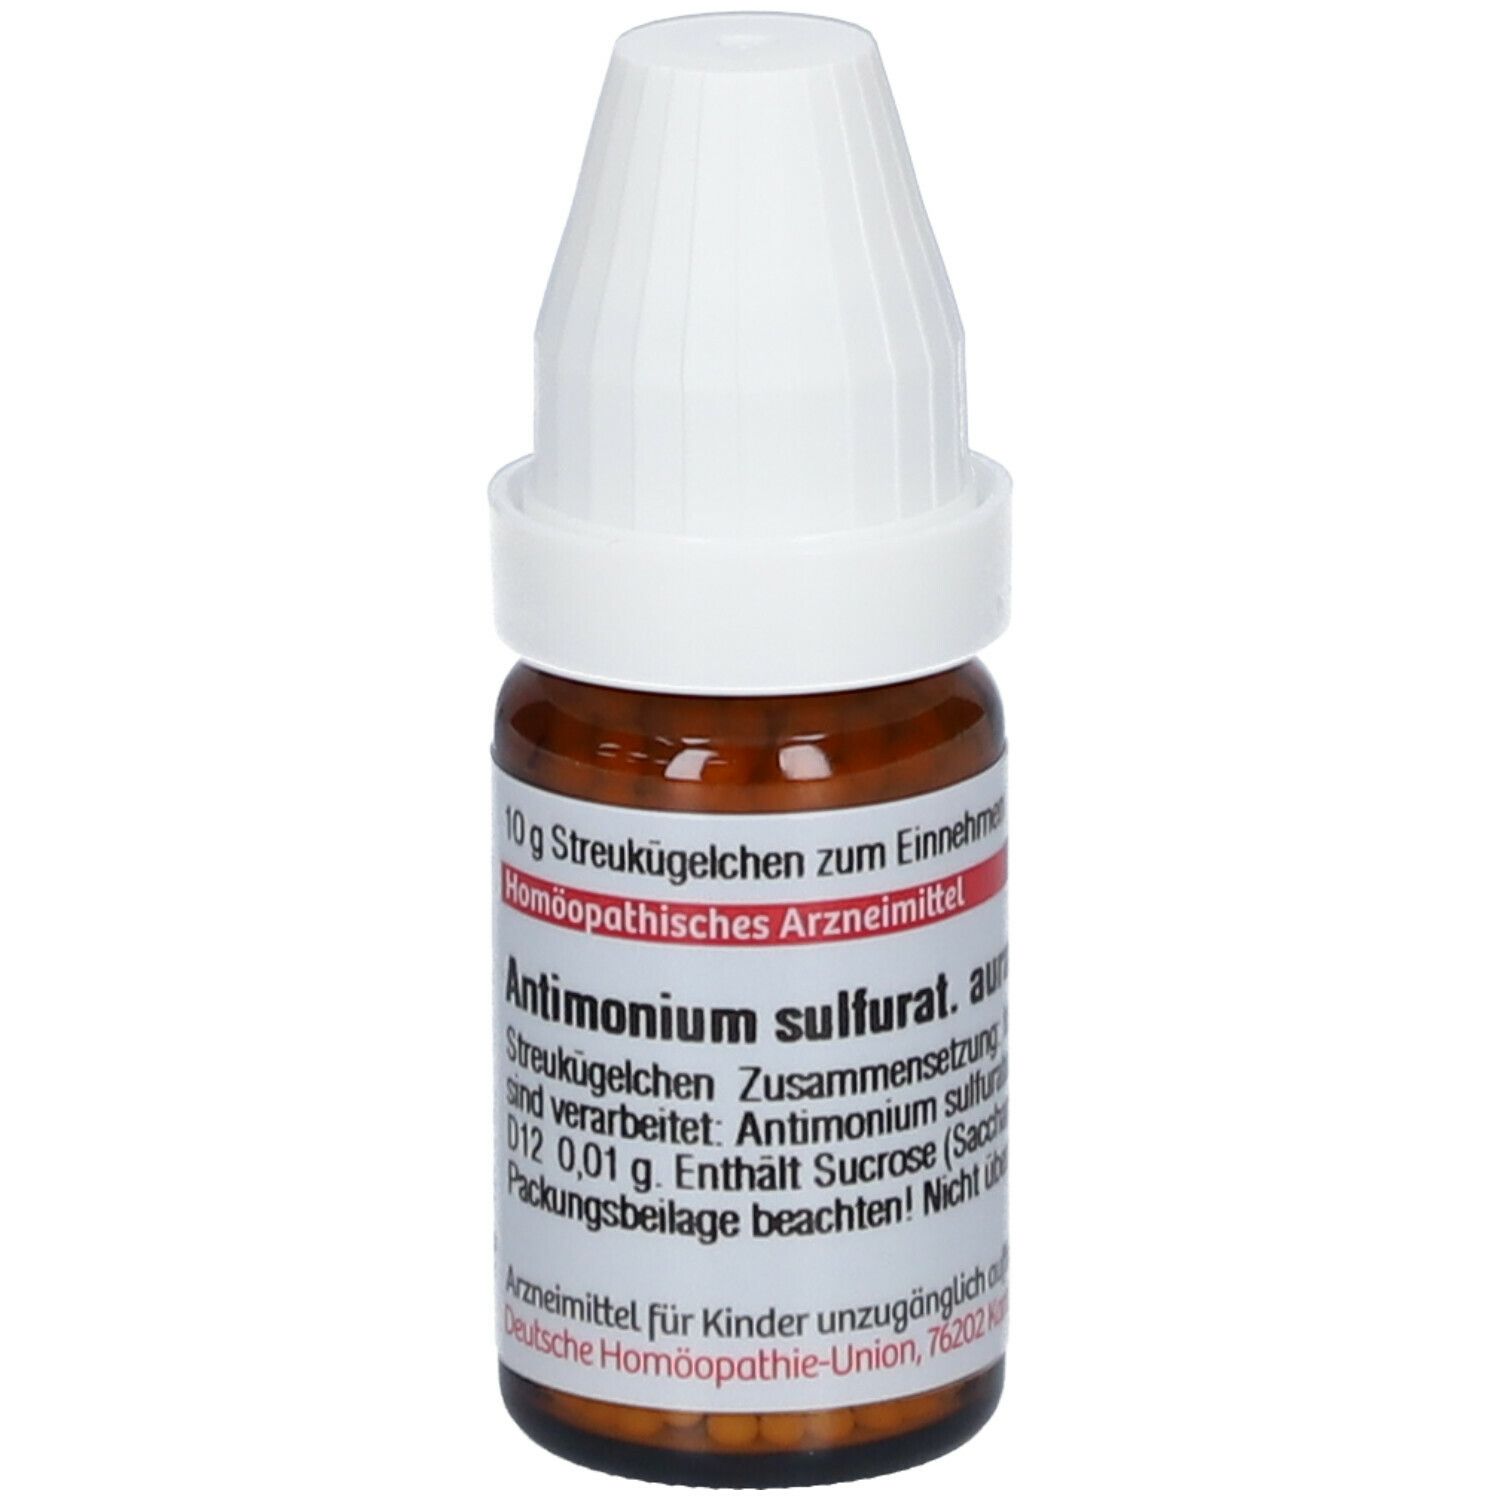 DHU Antimonium Sulfuratum Aurantiacum D12